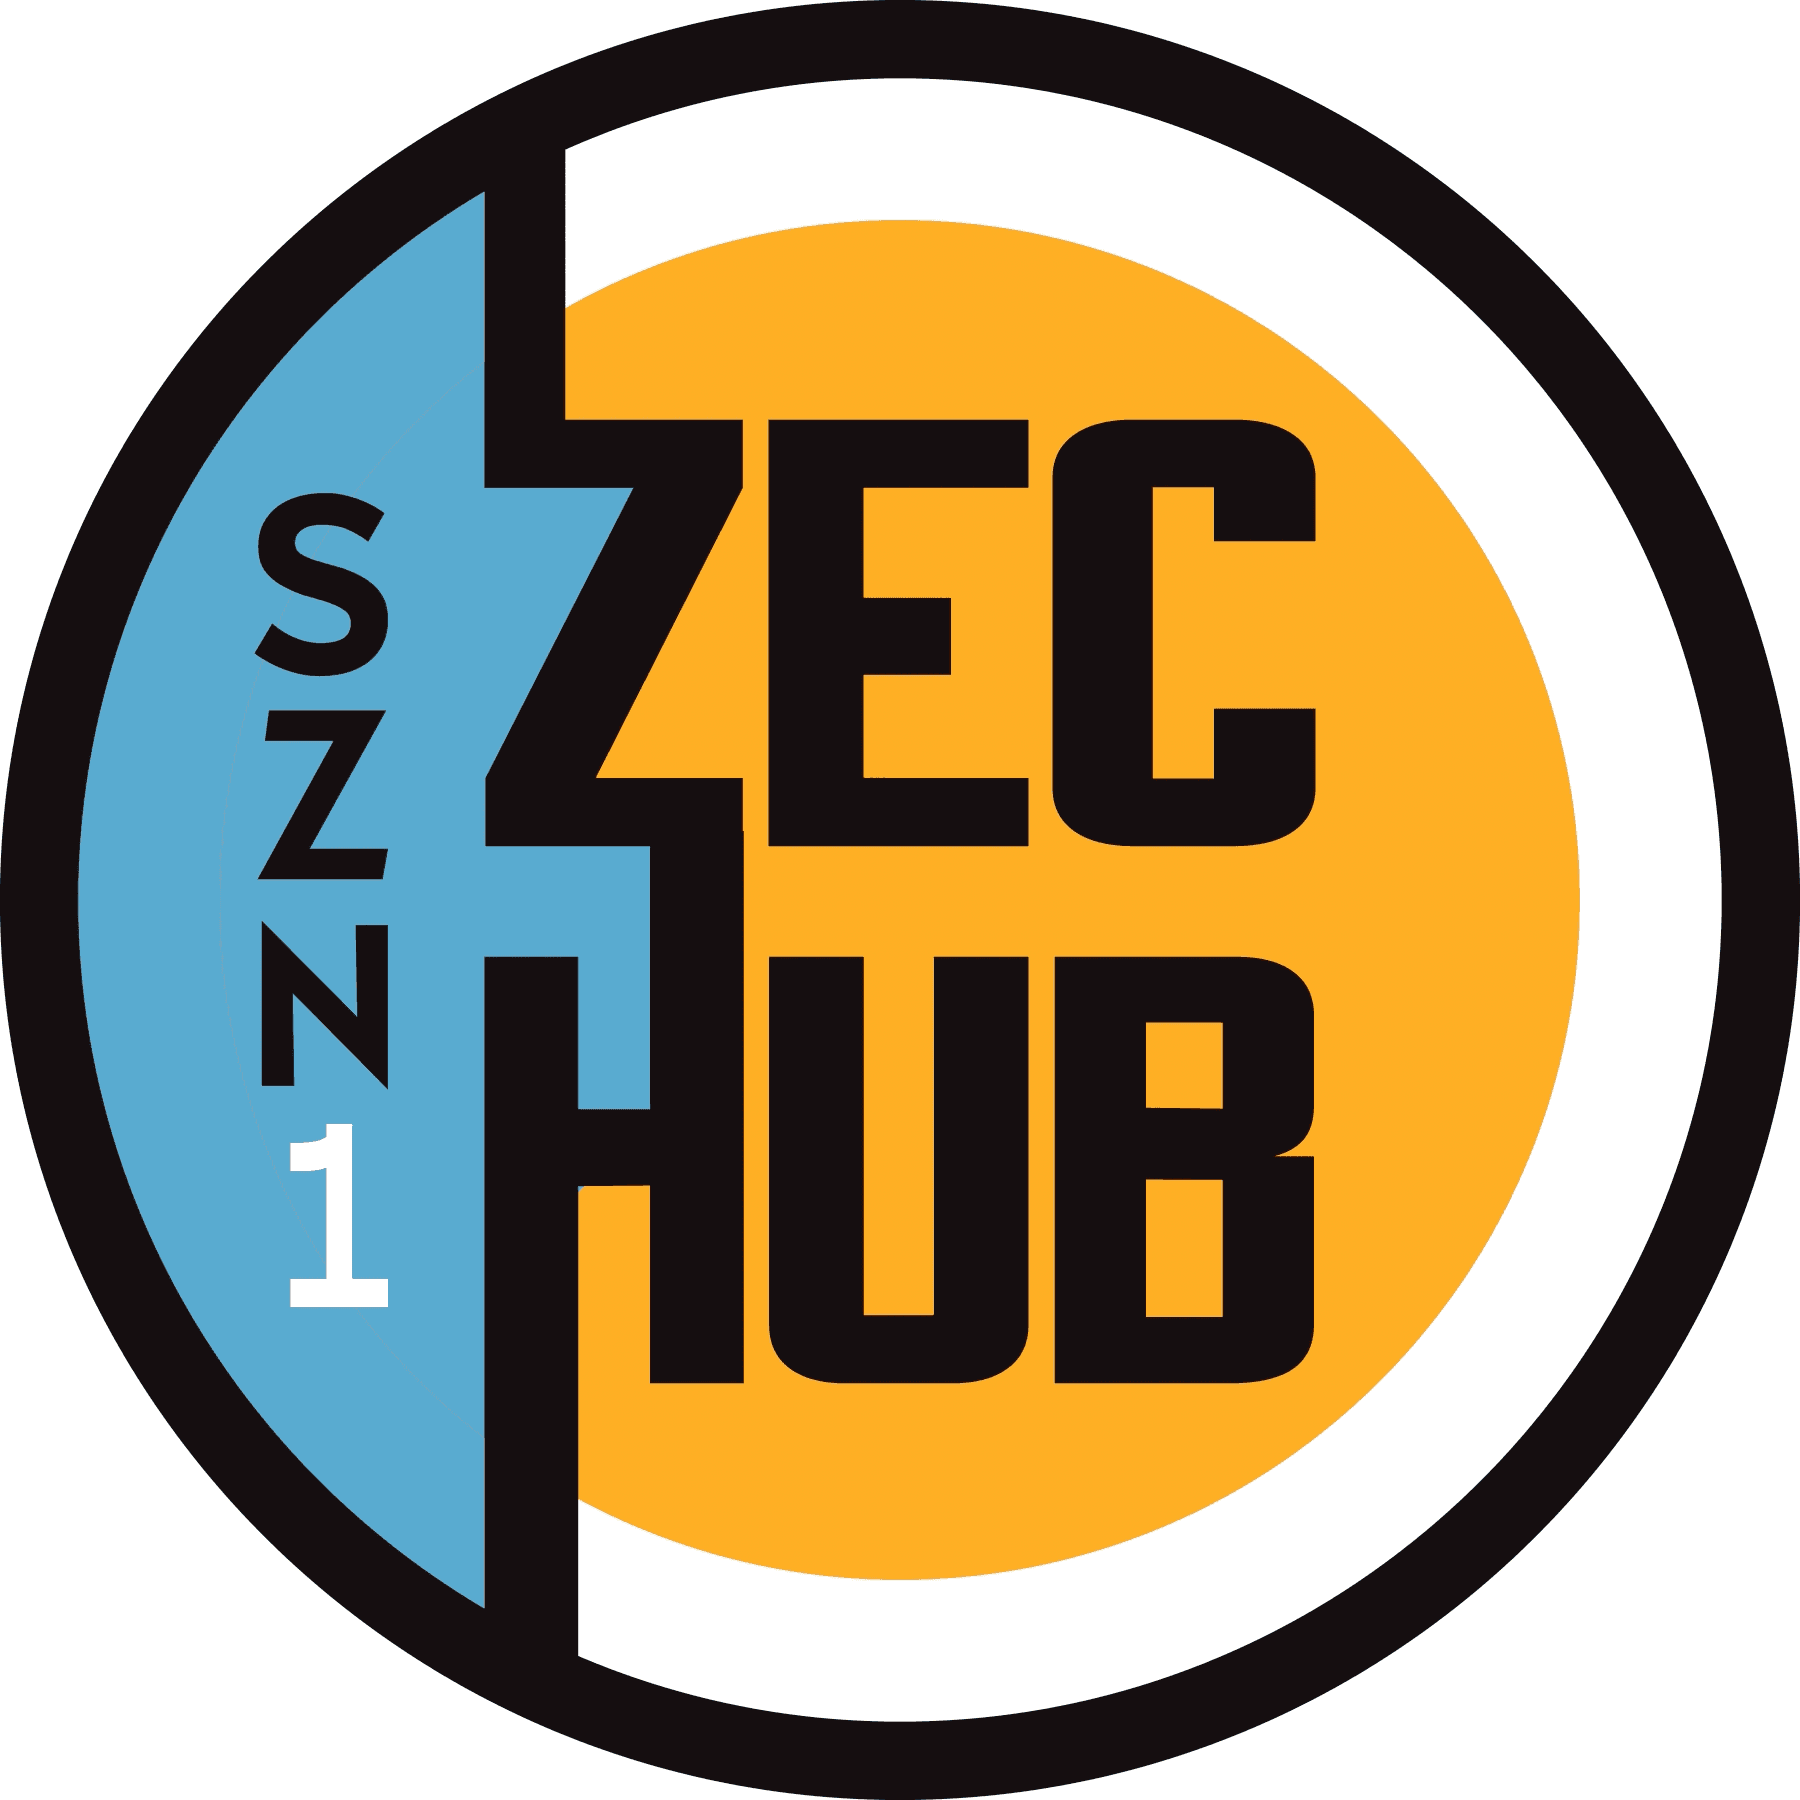 ZecHub